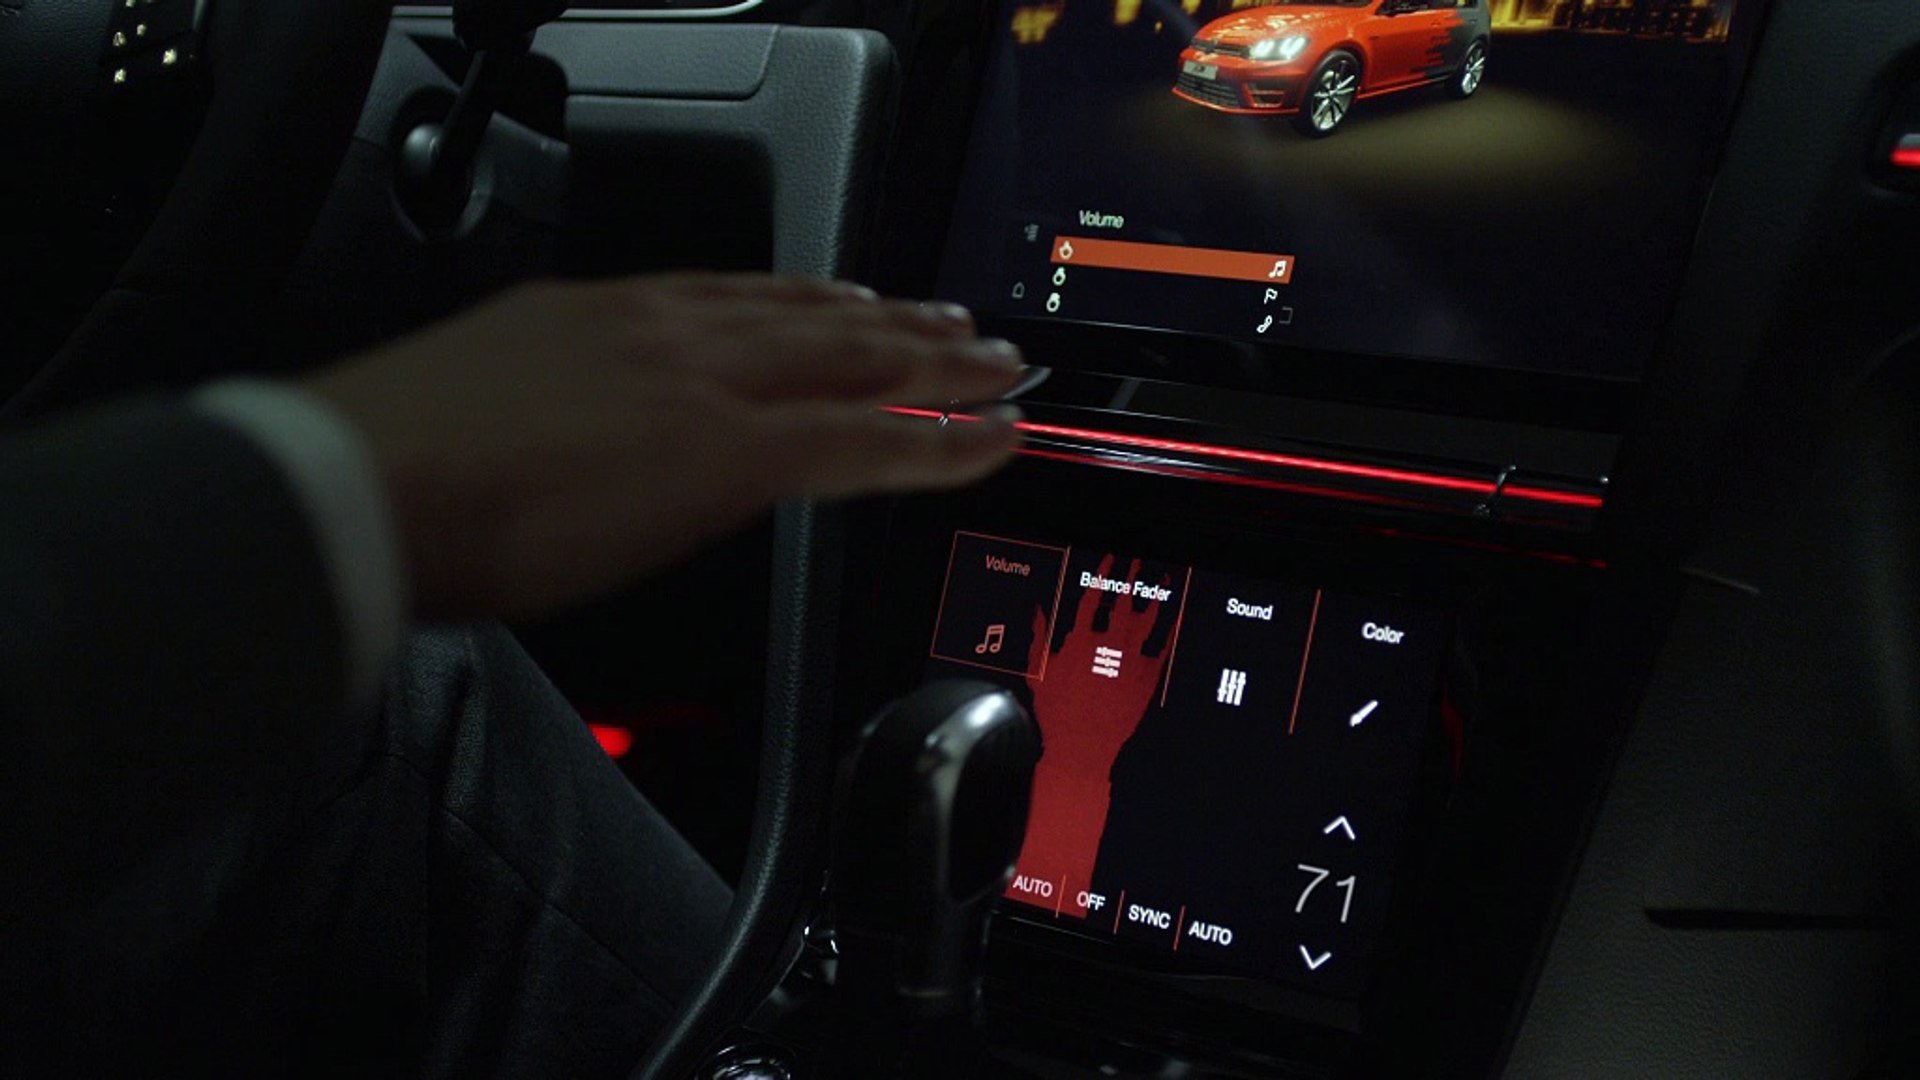 e-Golf Touch, nouveau système de commande gestuelle de Volkswagen